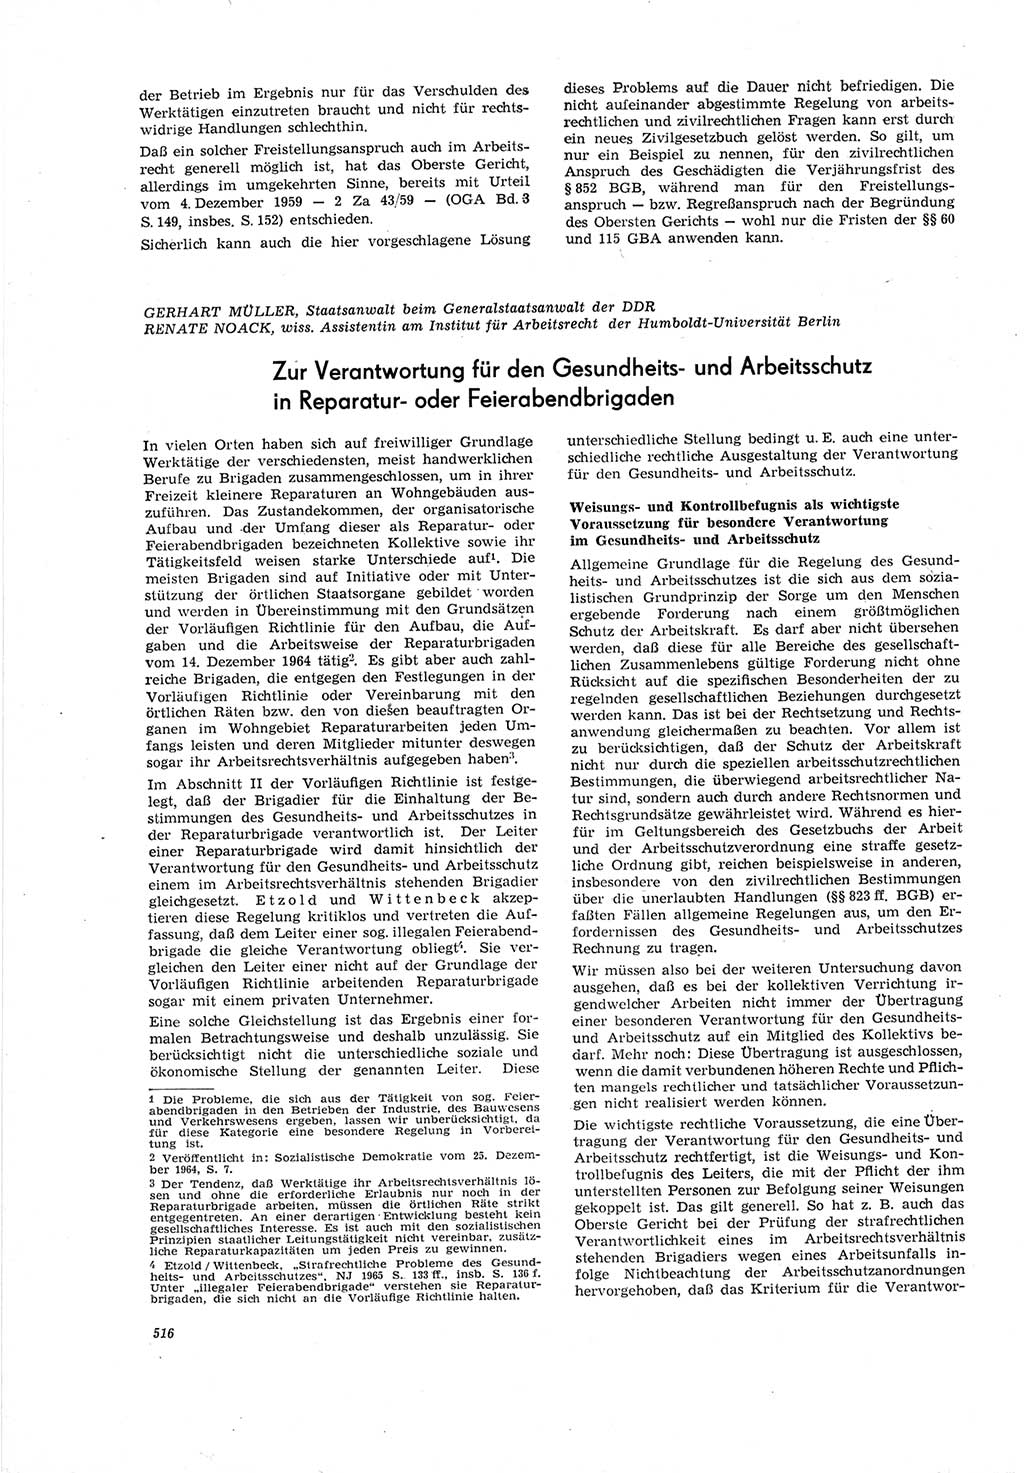 Neue Justiz (NJ), Zeitschrift für Recht und Rechtswissenschaft [Deutsche Demokratische Republik (DDR)], 19. Jahrgang 1965, Seite 516 (NJ DDR 1965, S. 516)